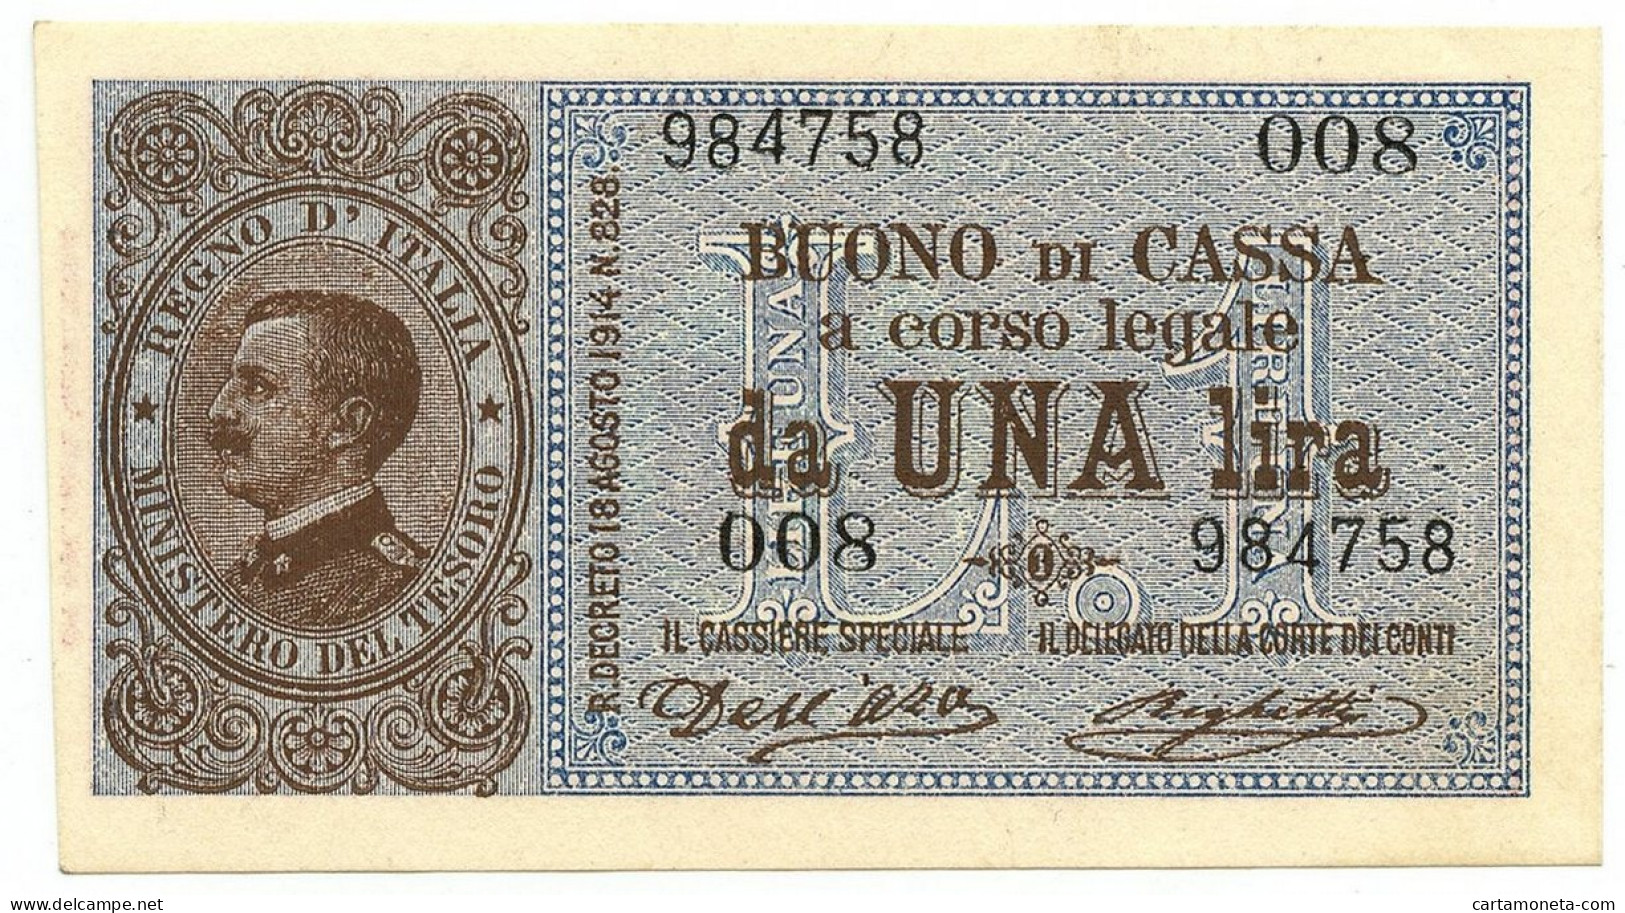 1 LIRA BUONO DI CASSA EFFIGE VITTORIO EMANUELE III 02/09/1914 QFDS - Andere